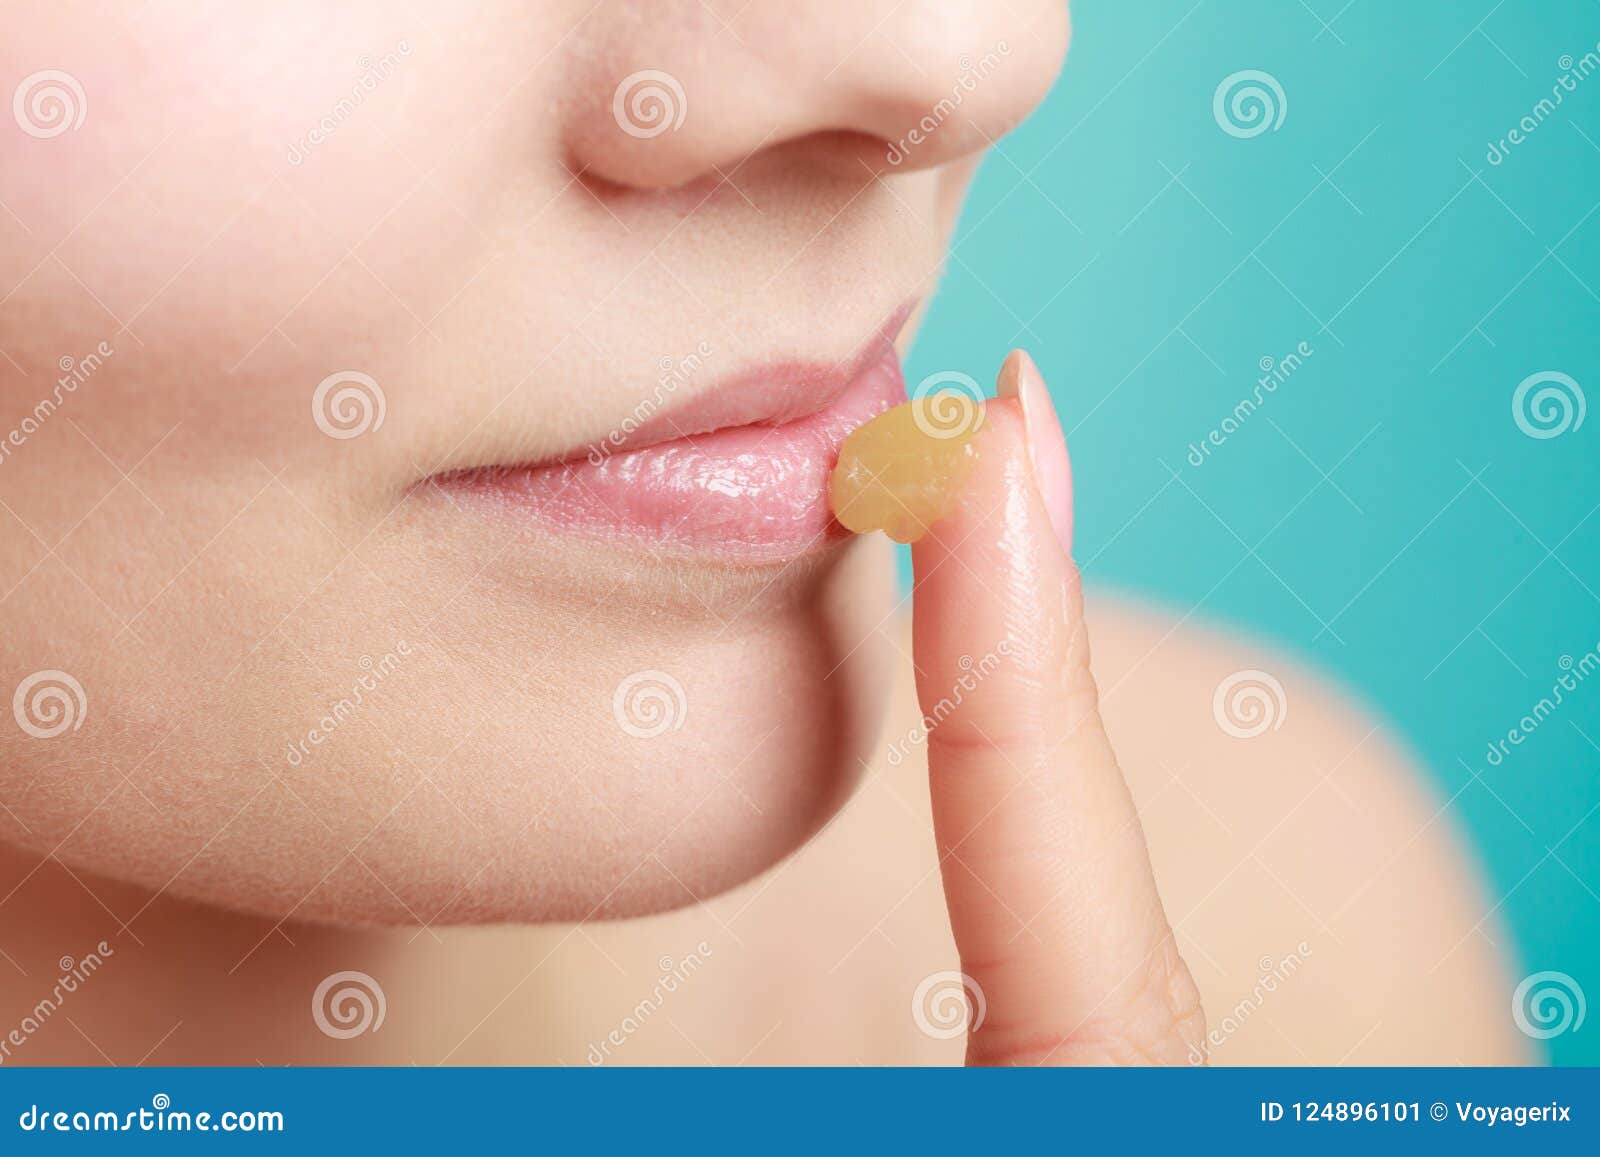 Мазать губы гигиенической помадой. Бальзам для губ нанесение. Бальзам для губ девушка. Гигиеническая помада для губ.